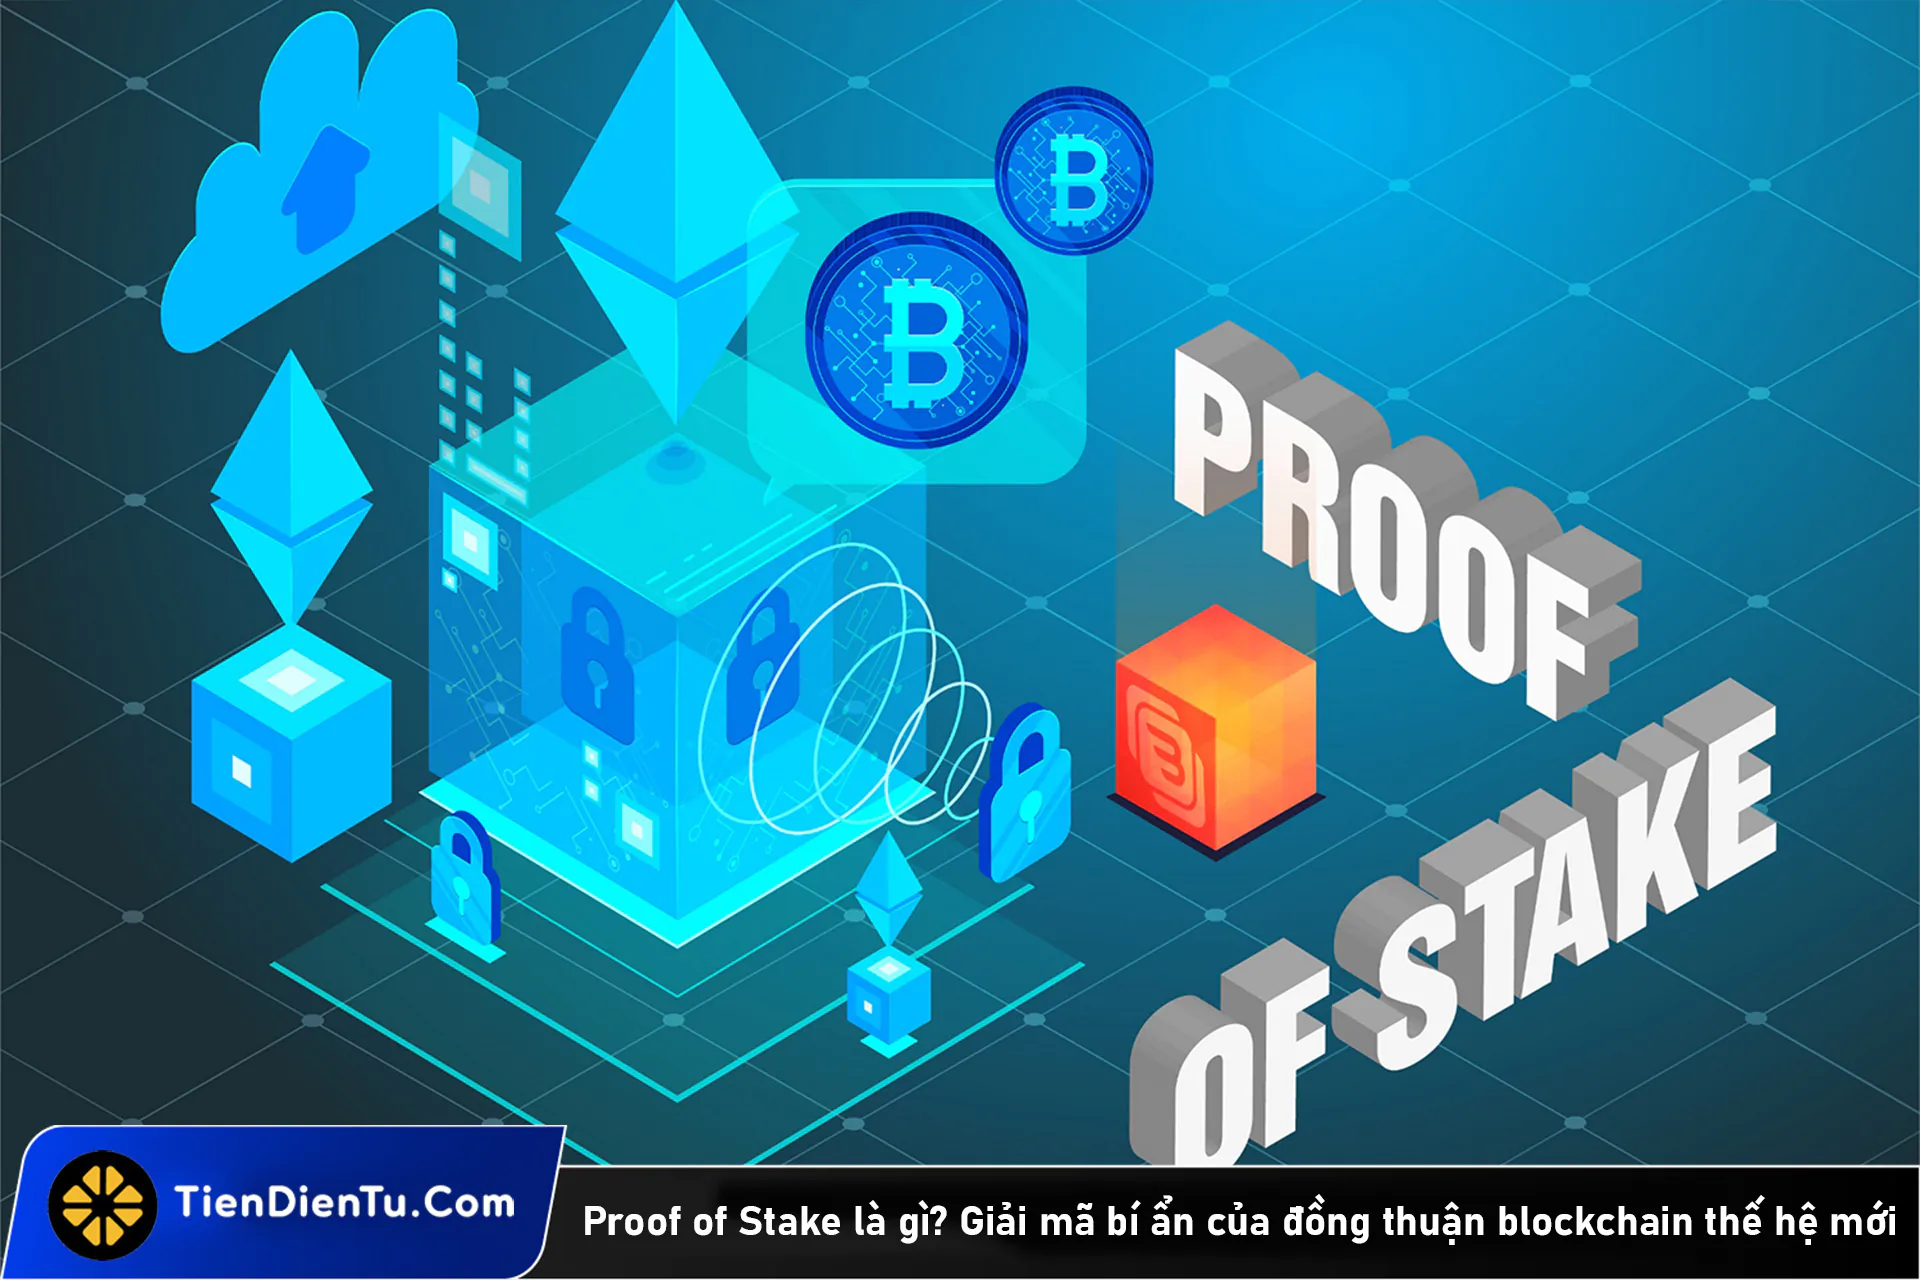 Proof of Stake là gì? Hướng dẫn 7 bước cơ bản để đào coin PoS